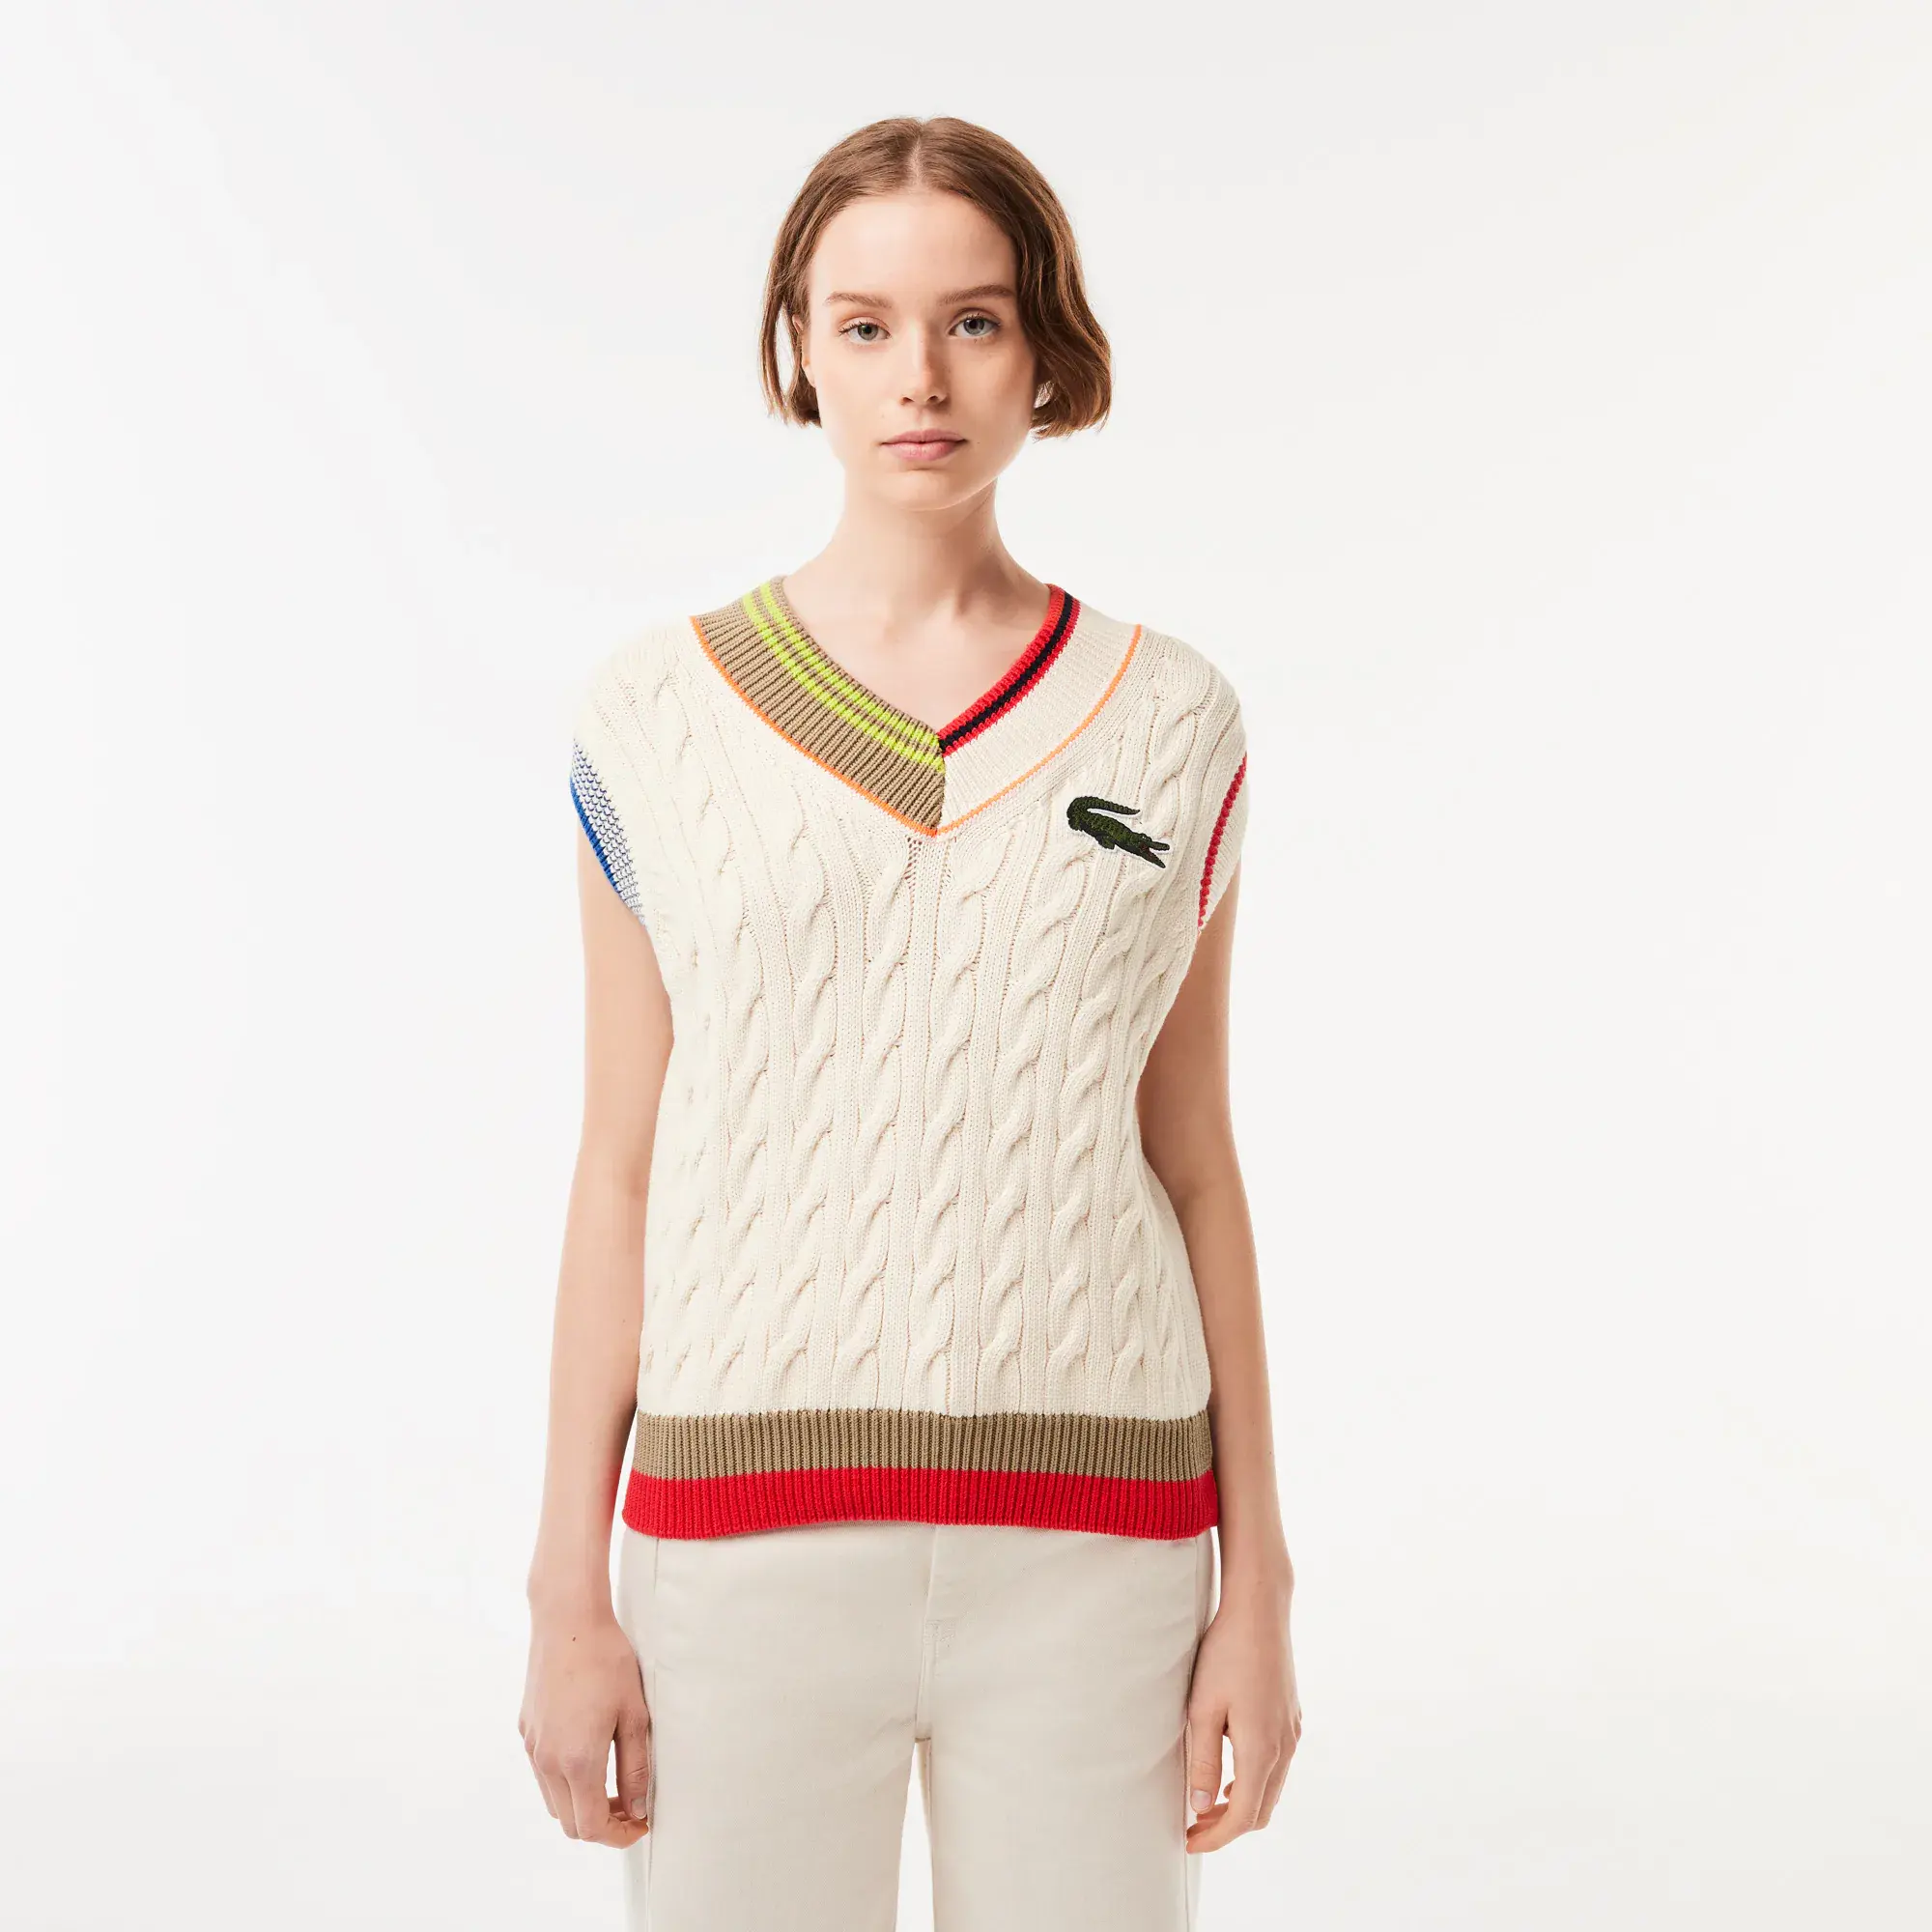 Lacoste Women’s Cable Knit Sweater Vest. 1